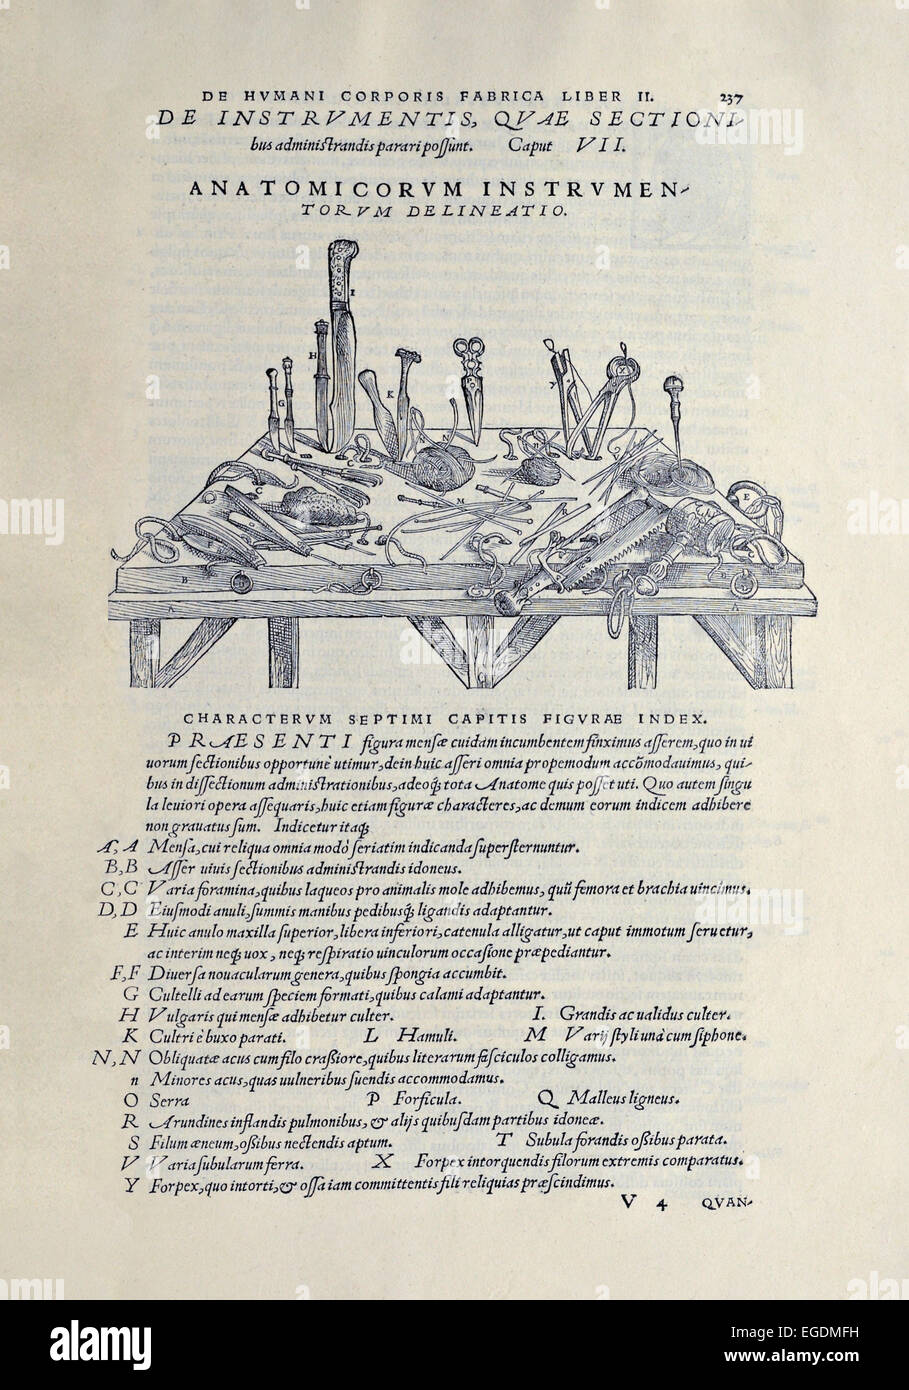 Strumenti chirurgici utilizzati per la dissezione dei cadaveri per capire anatomia umana. Da 'De humani corporis fabrica libri septem' da Andreas Vesalius (1514-1564), pubblicato nel 1543. Vedere la descrizione per maggiori informazioni. Foto Stock